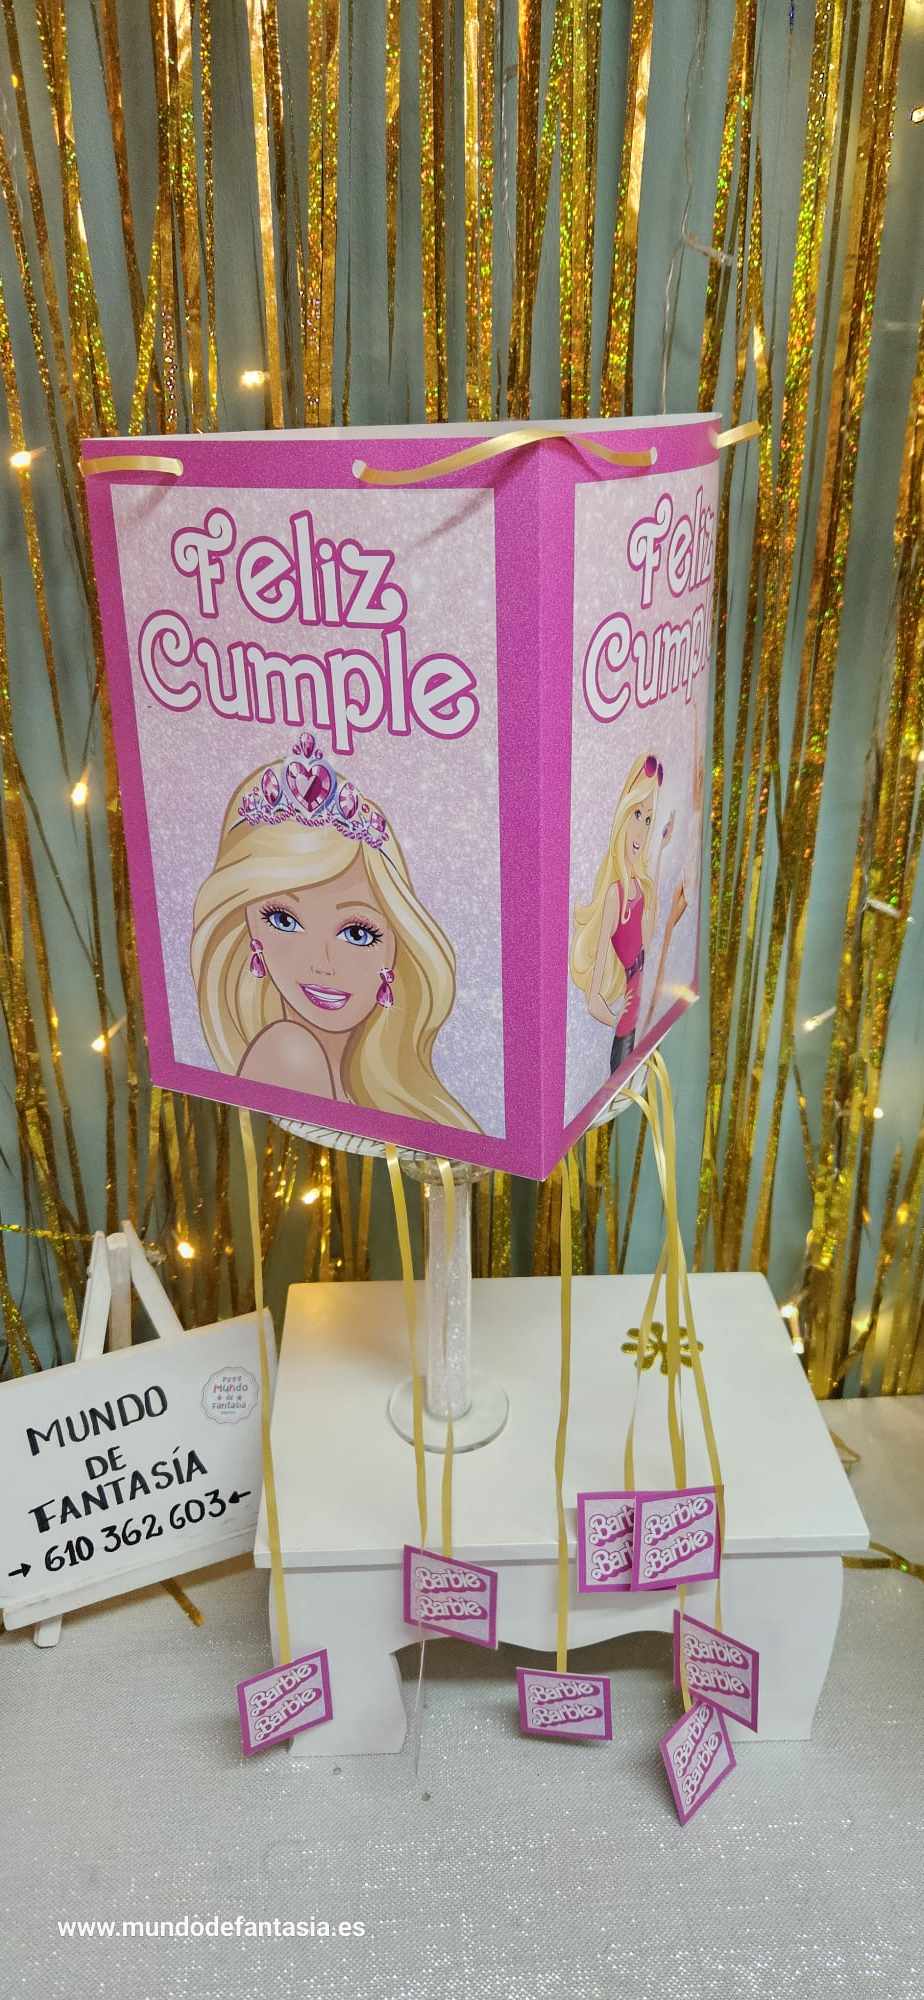 Piñata Barbie - Decoraciones para Piñatas - Tienda de Piñatas